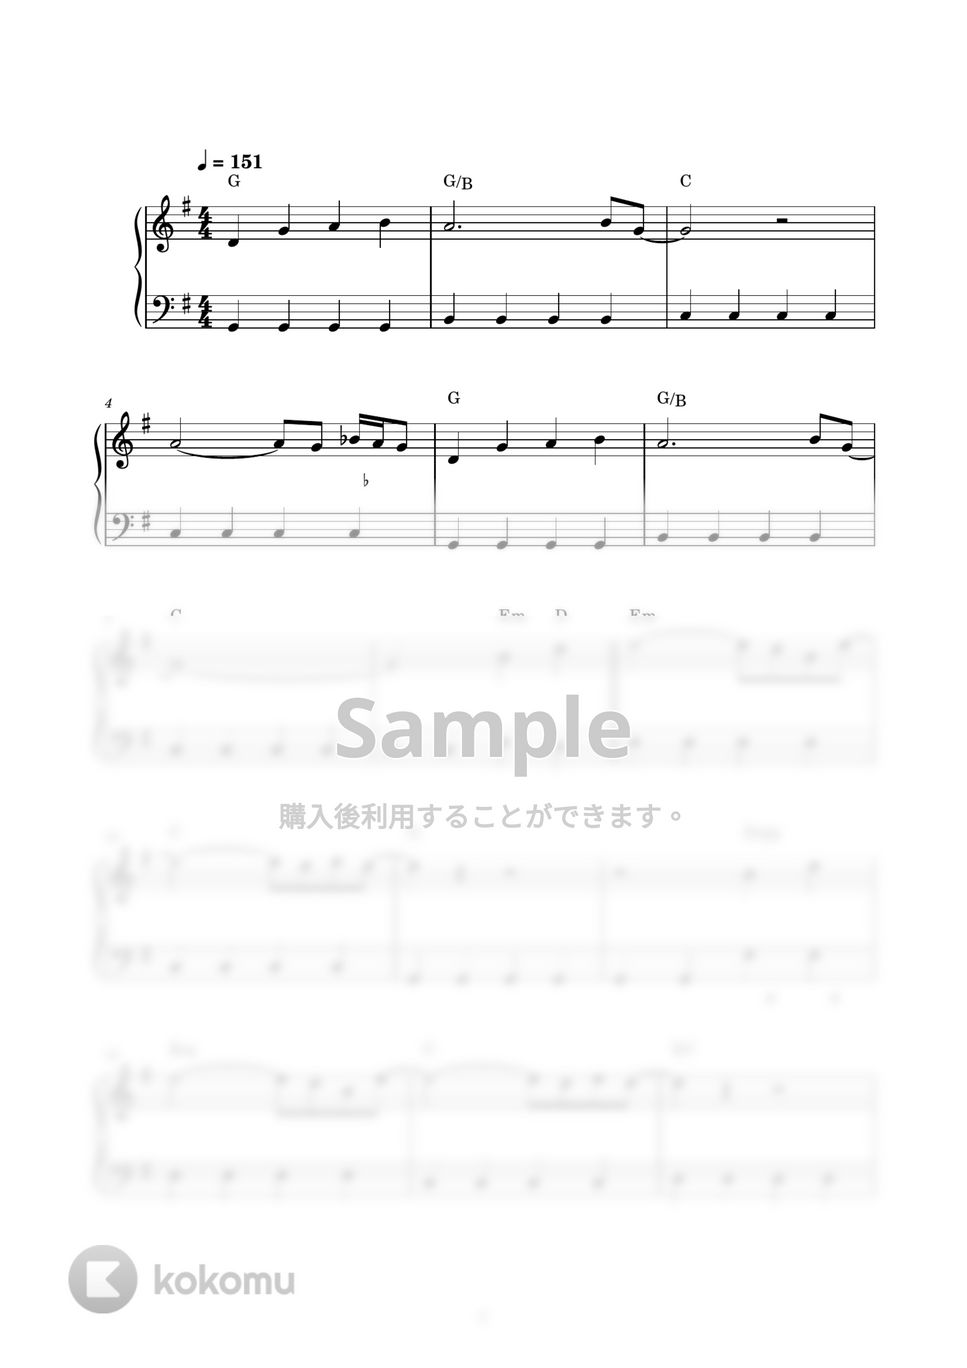 玉置浩二 - 田園 (ピアノ楽譜 / かんたん両手 / 歌詞付き / ドレミ付き / 初心者向き) by piano.tokyo